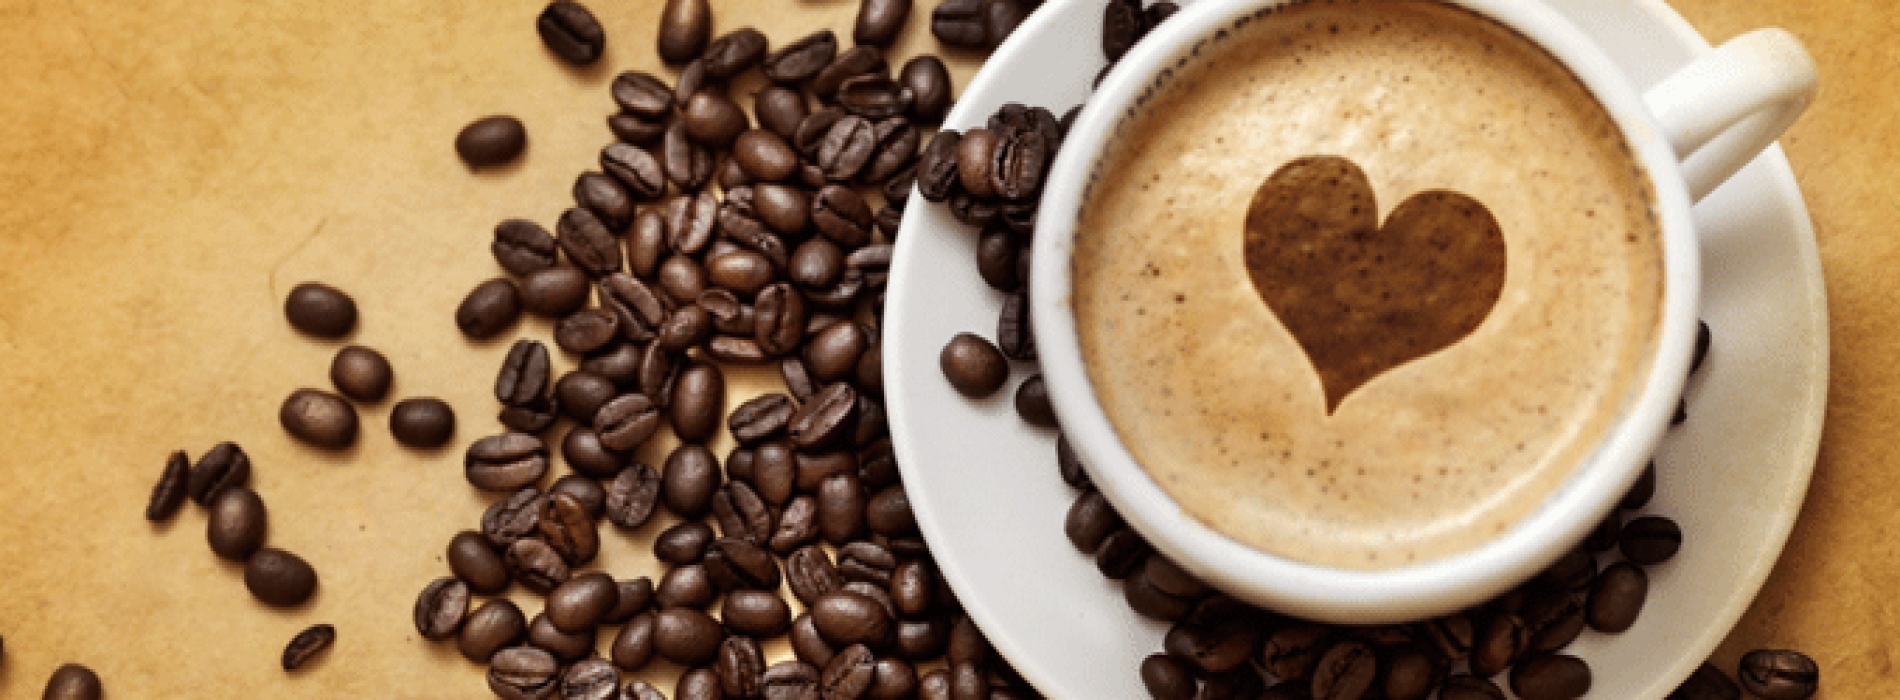 Drink gerust zes koppen koffie per dag. Dat is niet ongezond